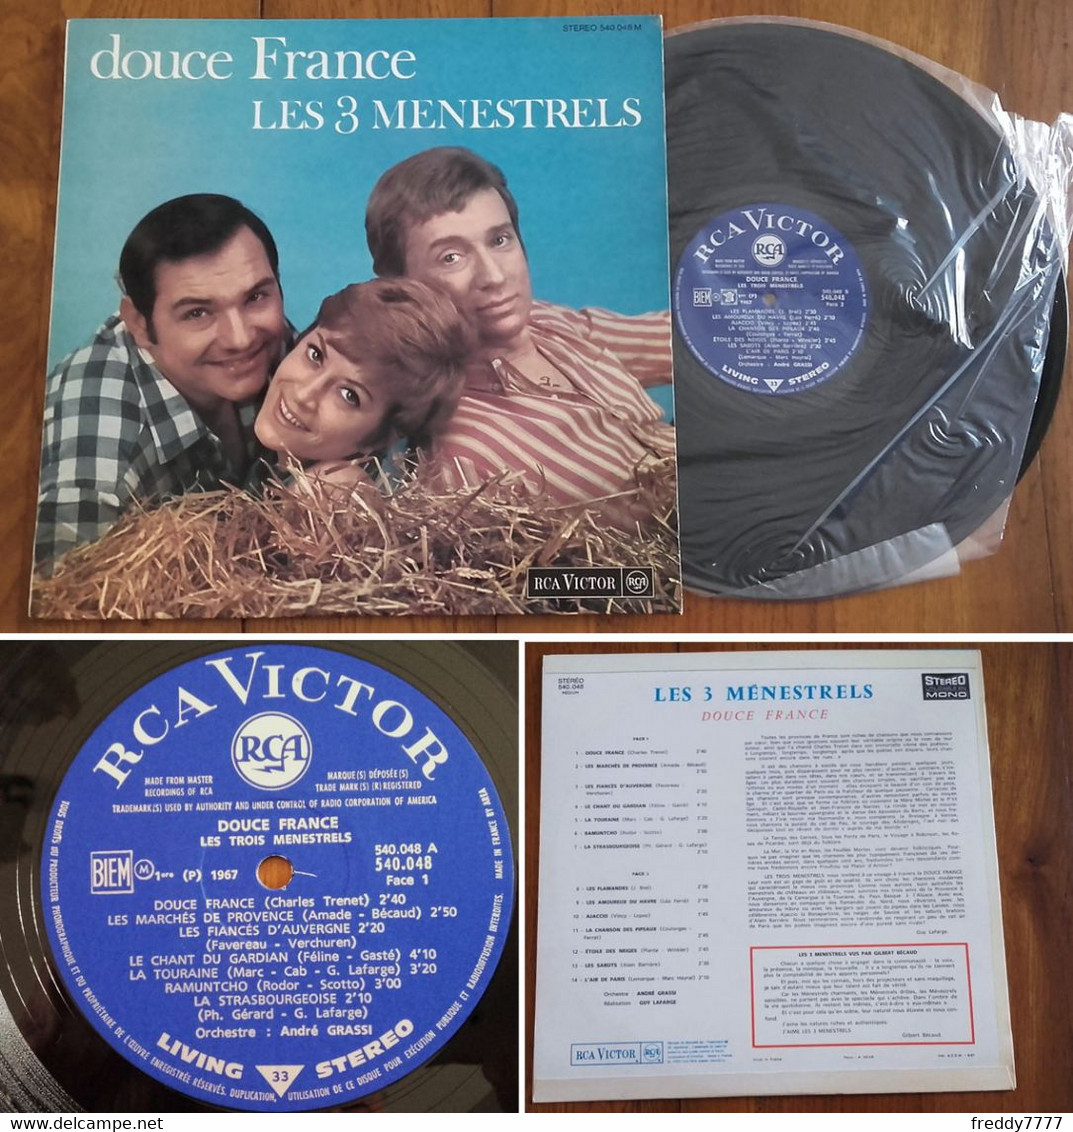 RARE French LP 33t RPM BIEM (12") LES 3 MENESTRELS (Superbe état, 9/1967) - Collector's Editions